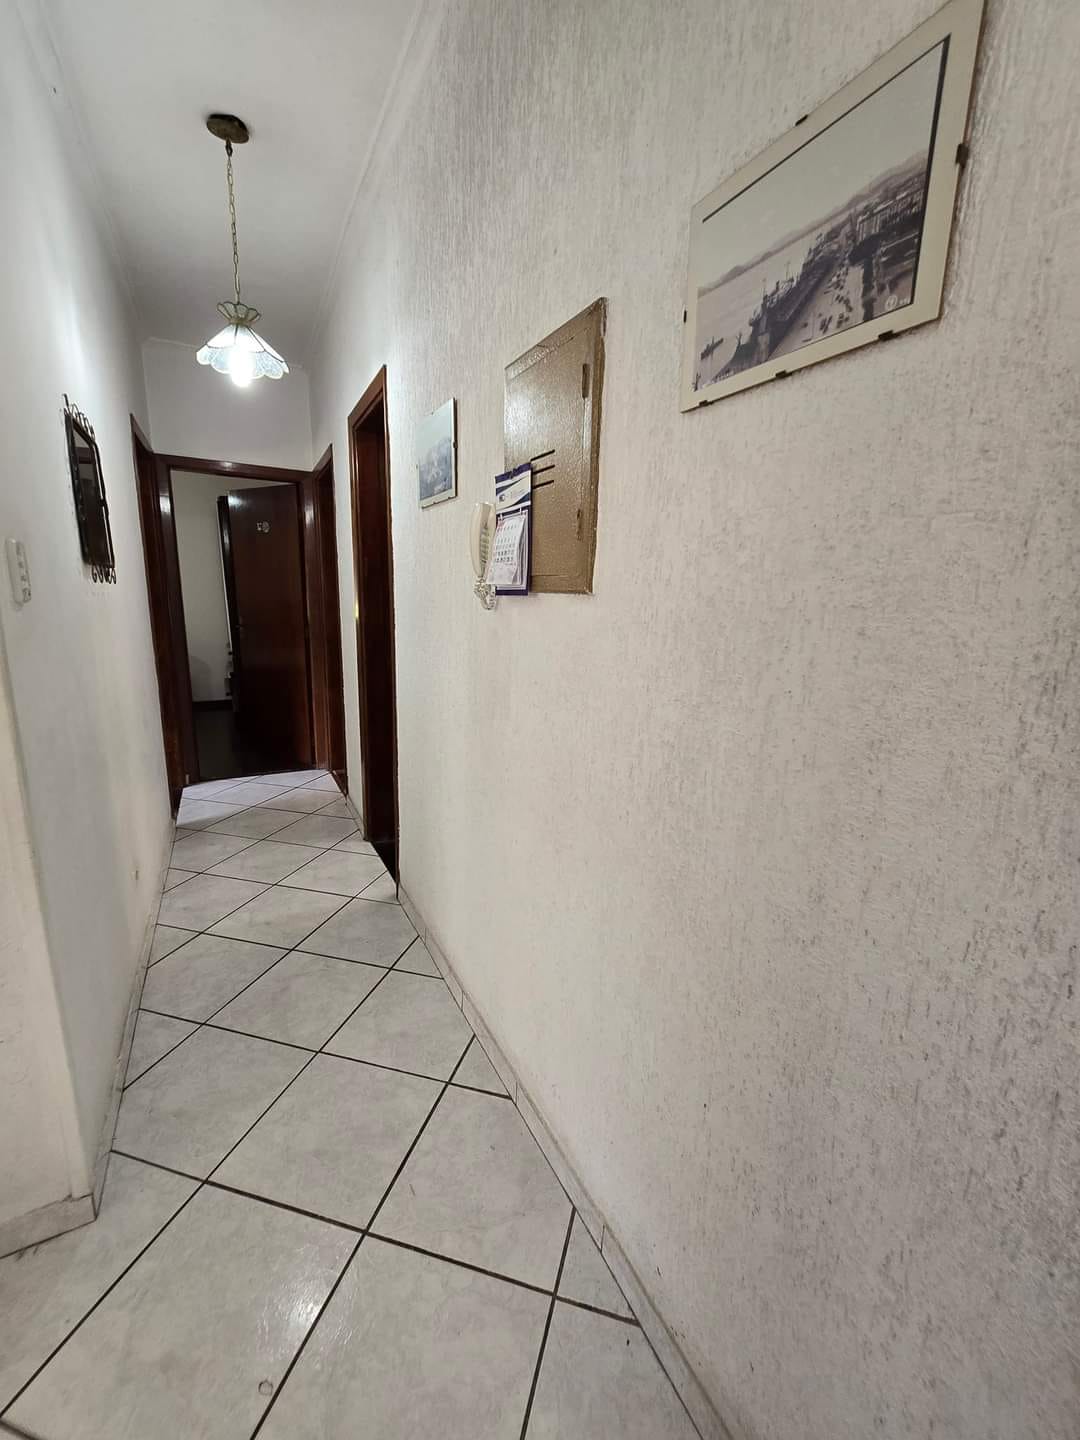 Pompeia Apartamento de 3 dormitorios predio de 3 andares garagem demarcada - foto 12